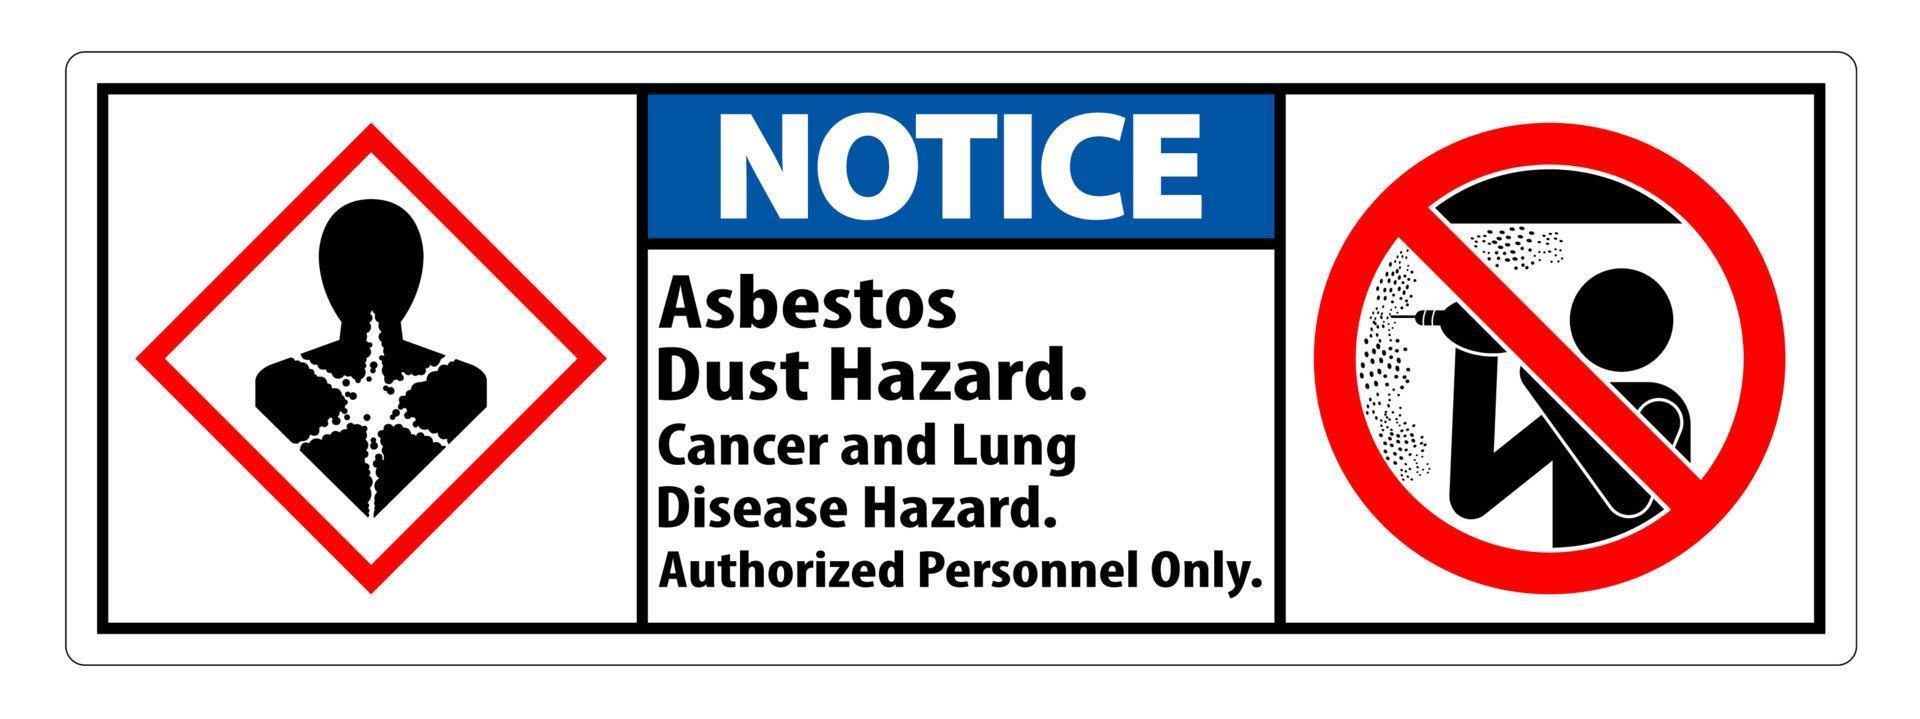 remarquez l'étiquette de sécurité, le risque de poussière d'amiante, le risque de cancer et de maladie pulmonaire uniquement pour le personnel autorisé vecteur